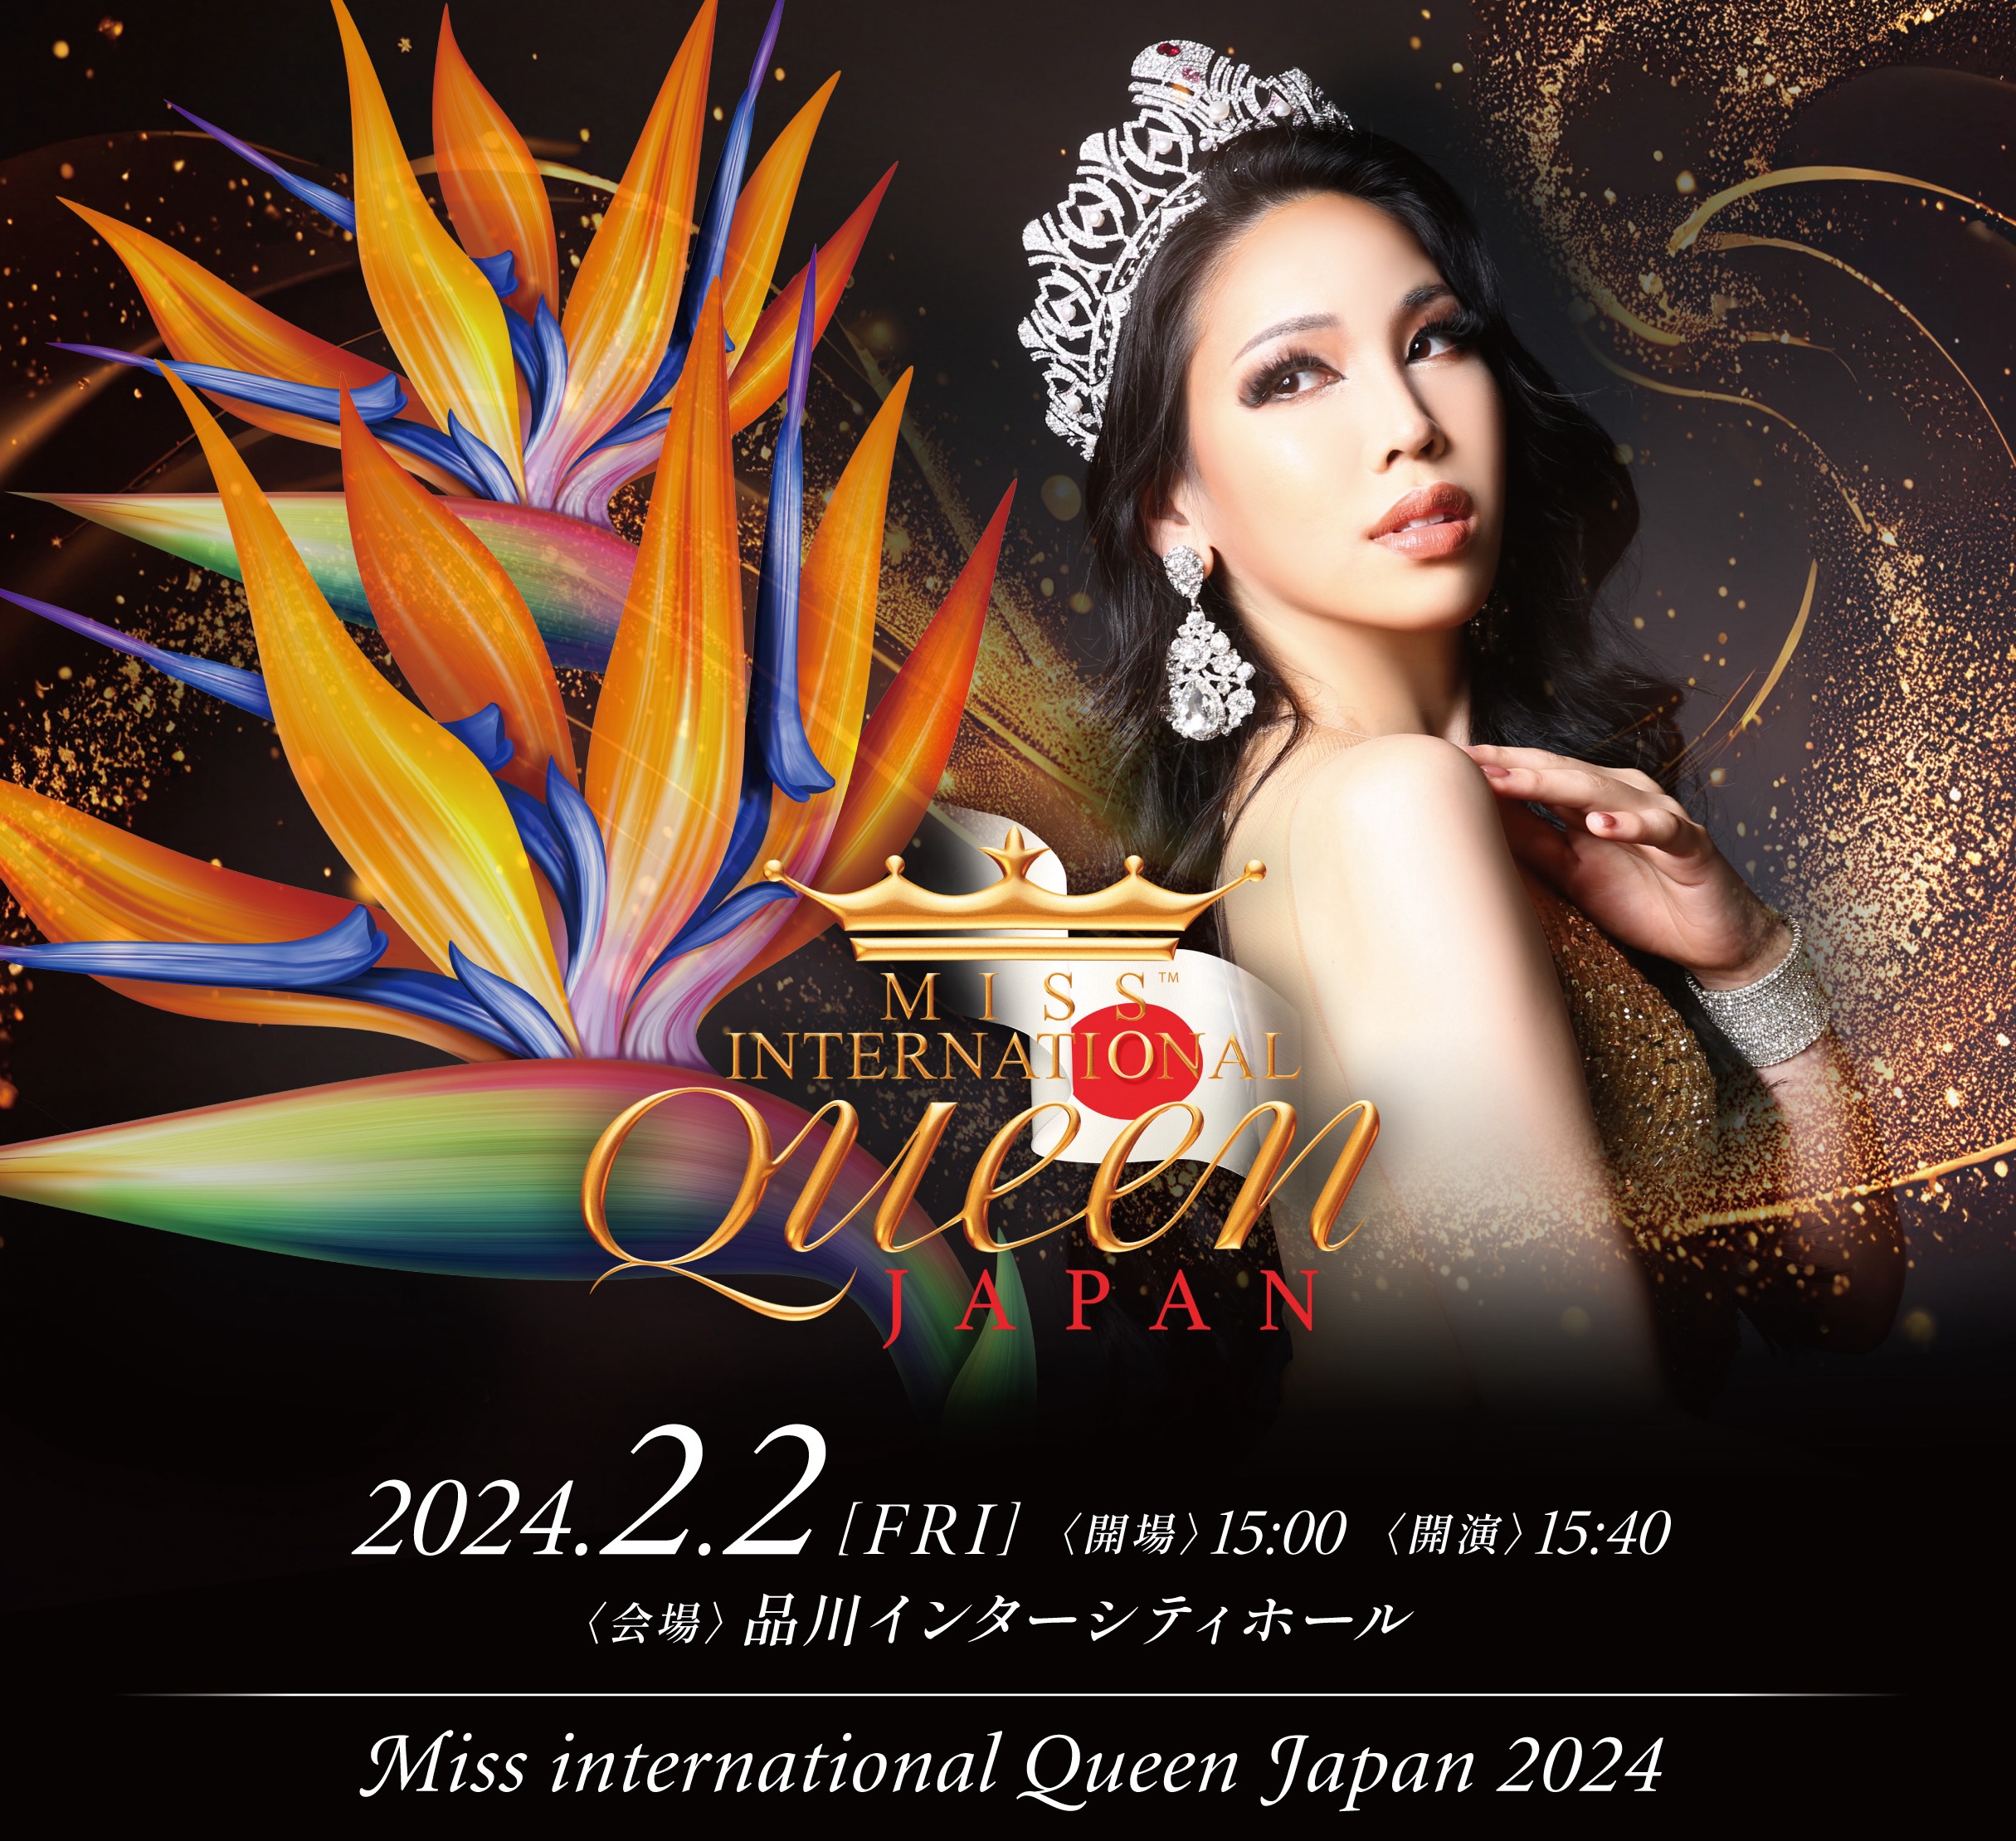 Miss International Queen JAPAN 2024